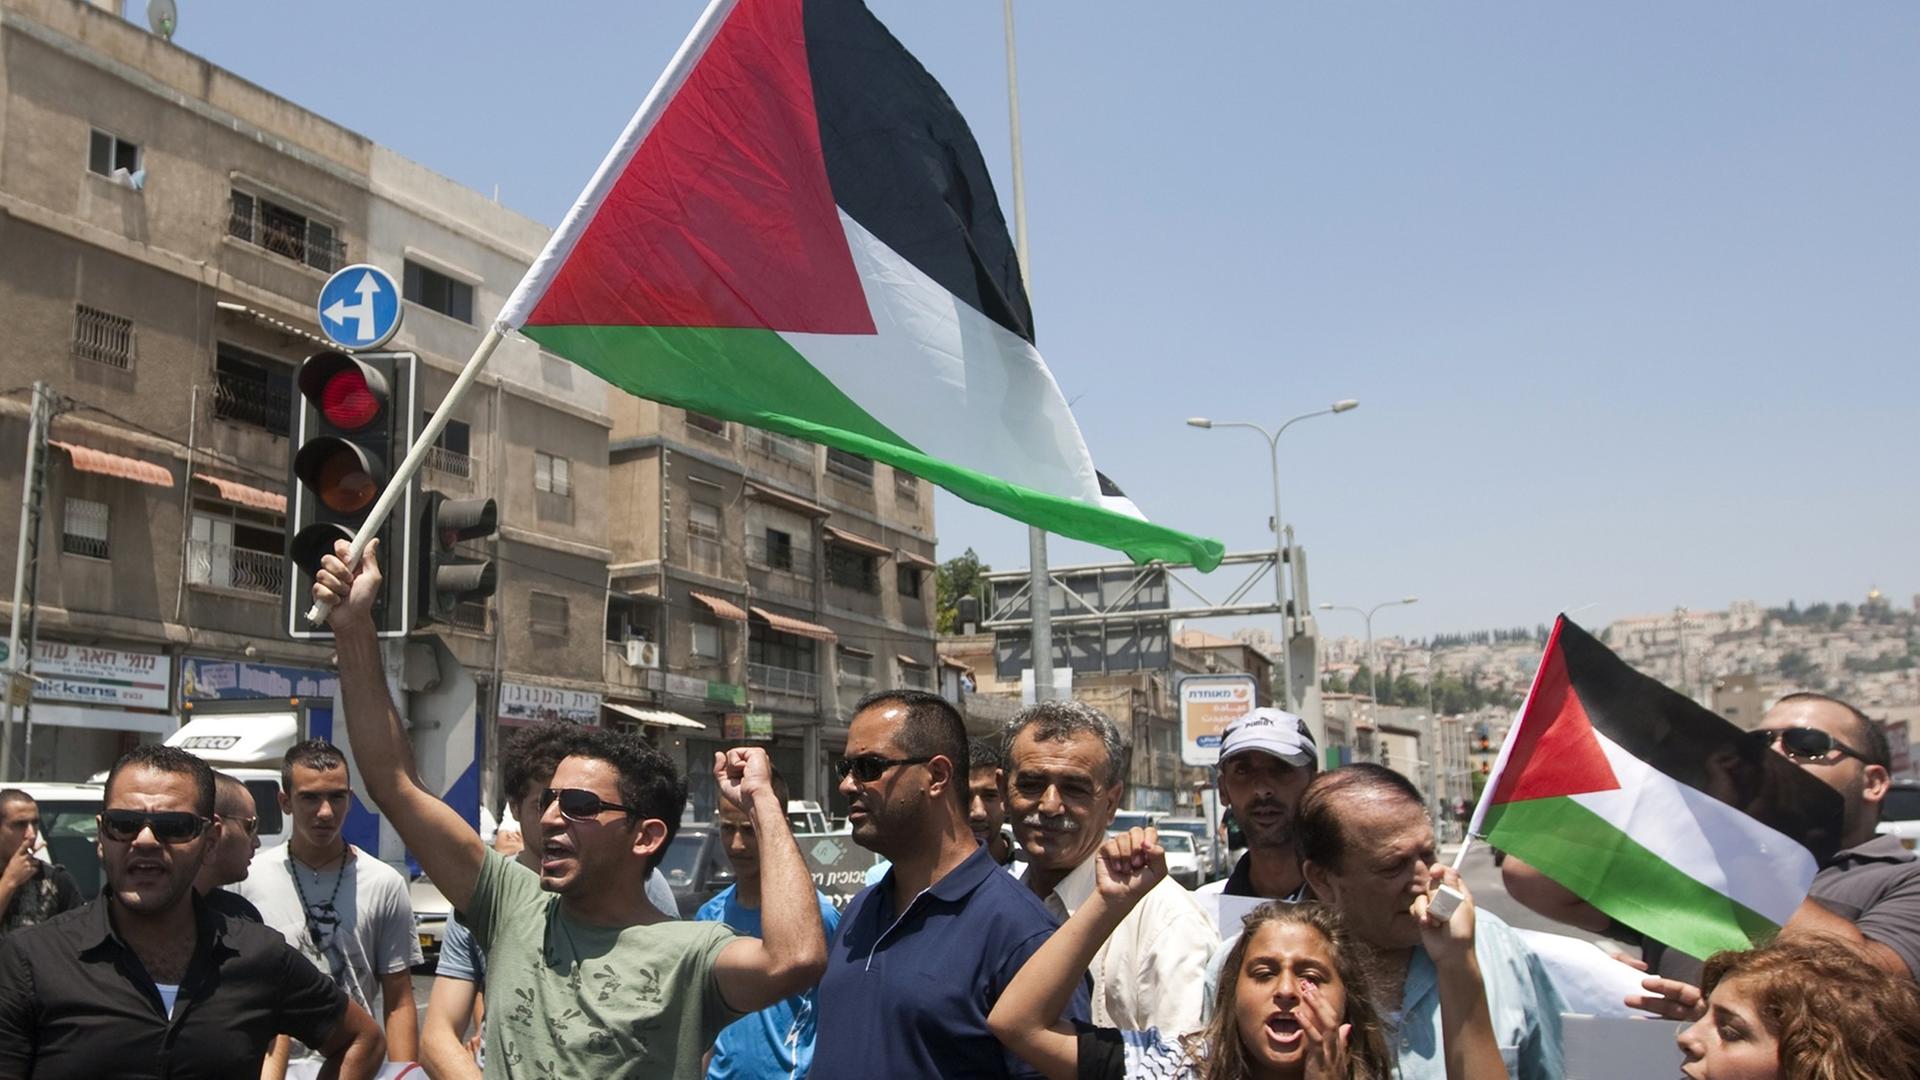 Menschen auf einer Straße vor Häusern, halten die palästinensische Flagge hoch, Arme in der Luft, rufen.